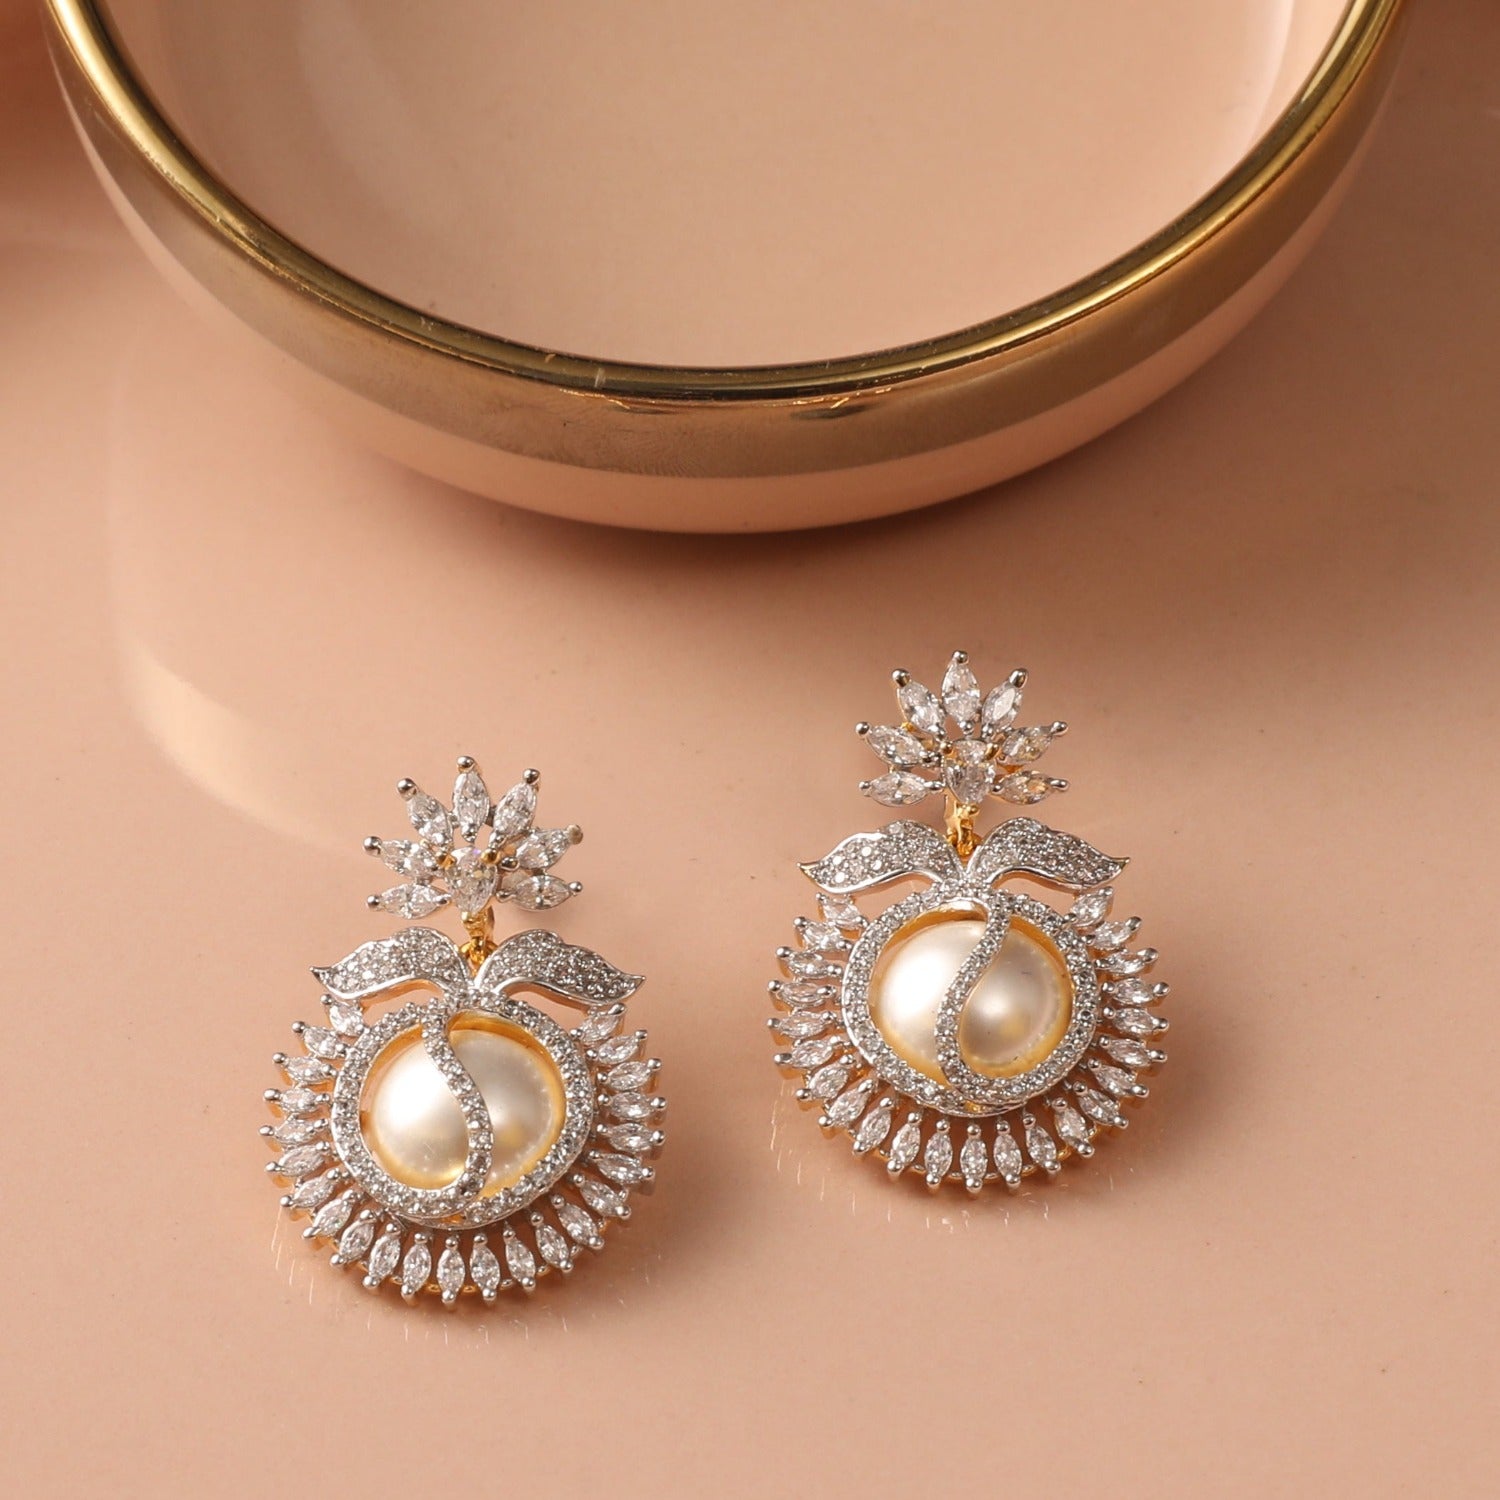 Vintage Diamond & Pearl Stud Earrings, by Tiffany & Co. – Jewels by Grace